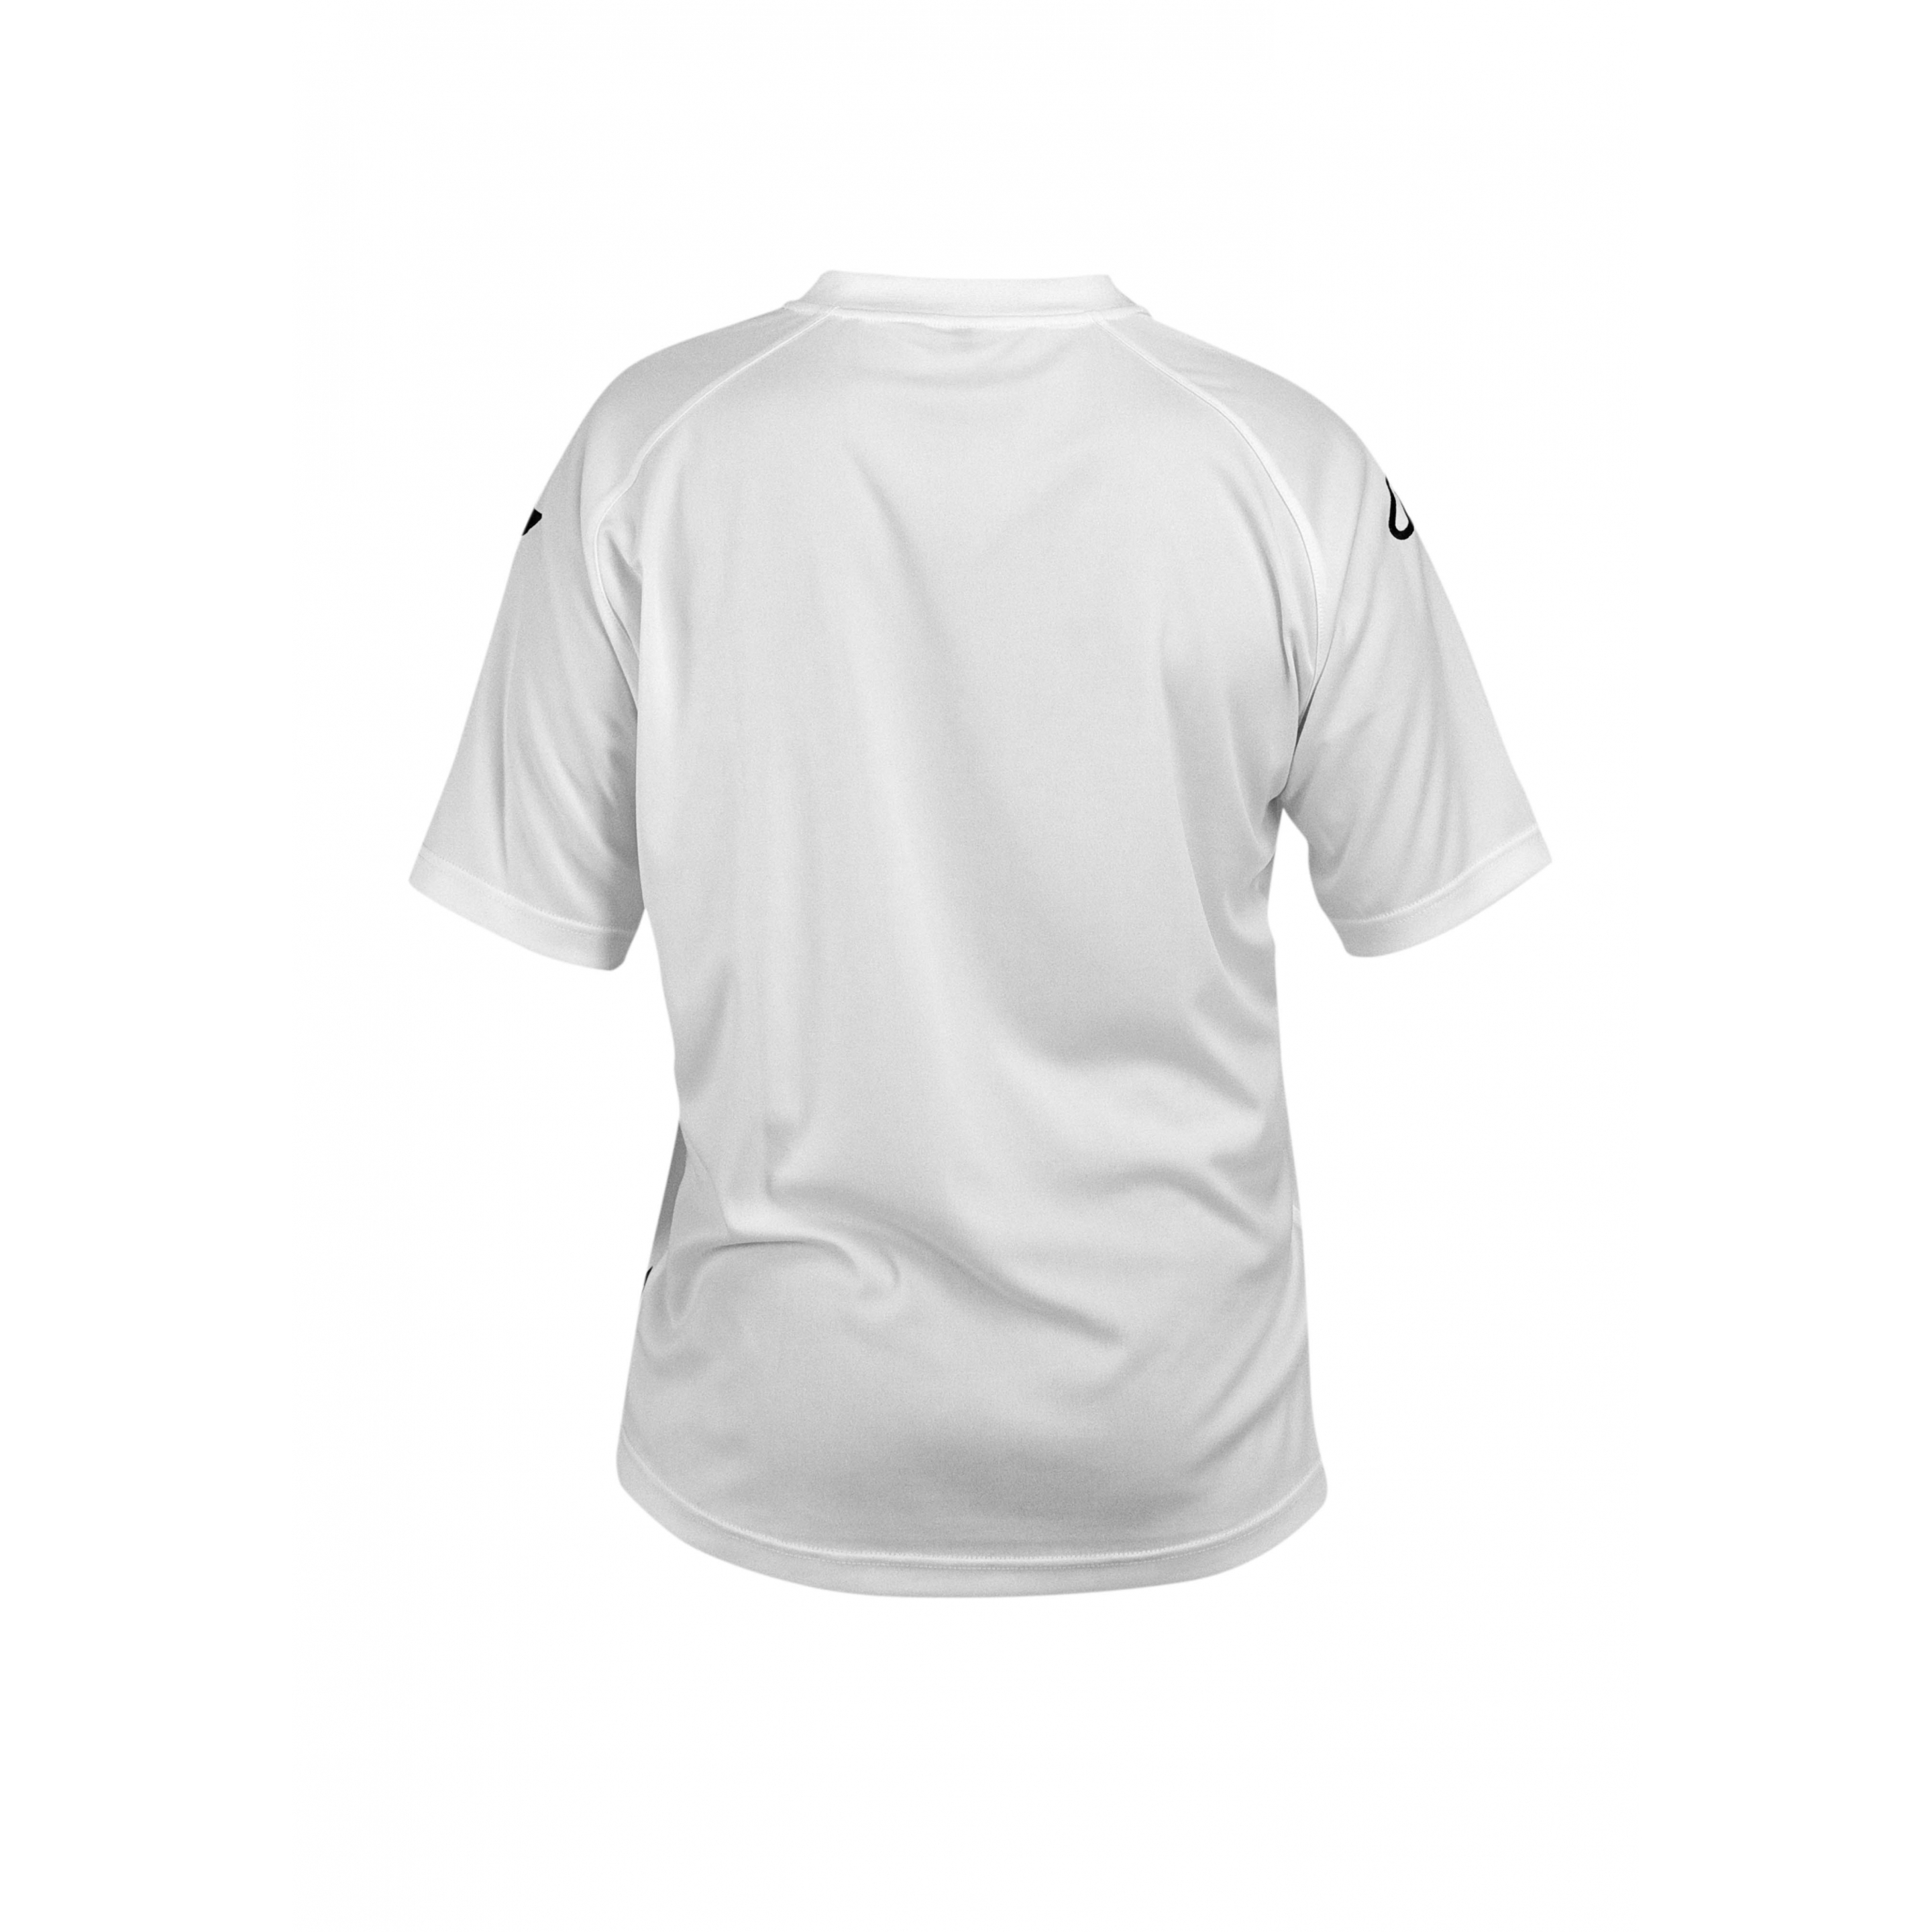 T-shirt Acerbis Atlantis - Blanco - T-shirt Acerbis Atlantis  MKP